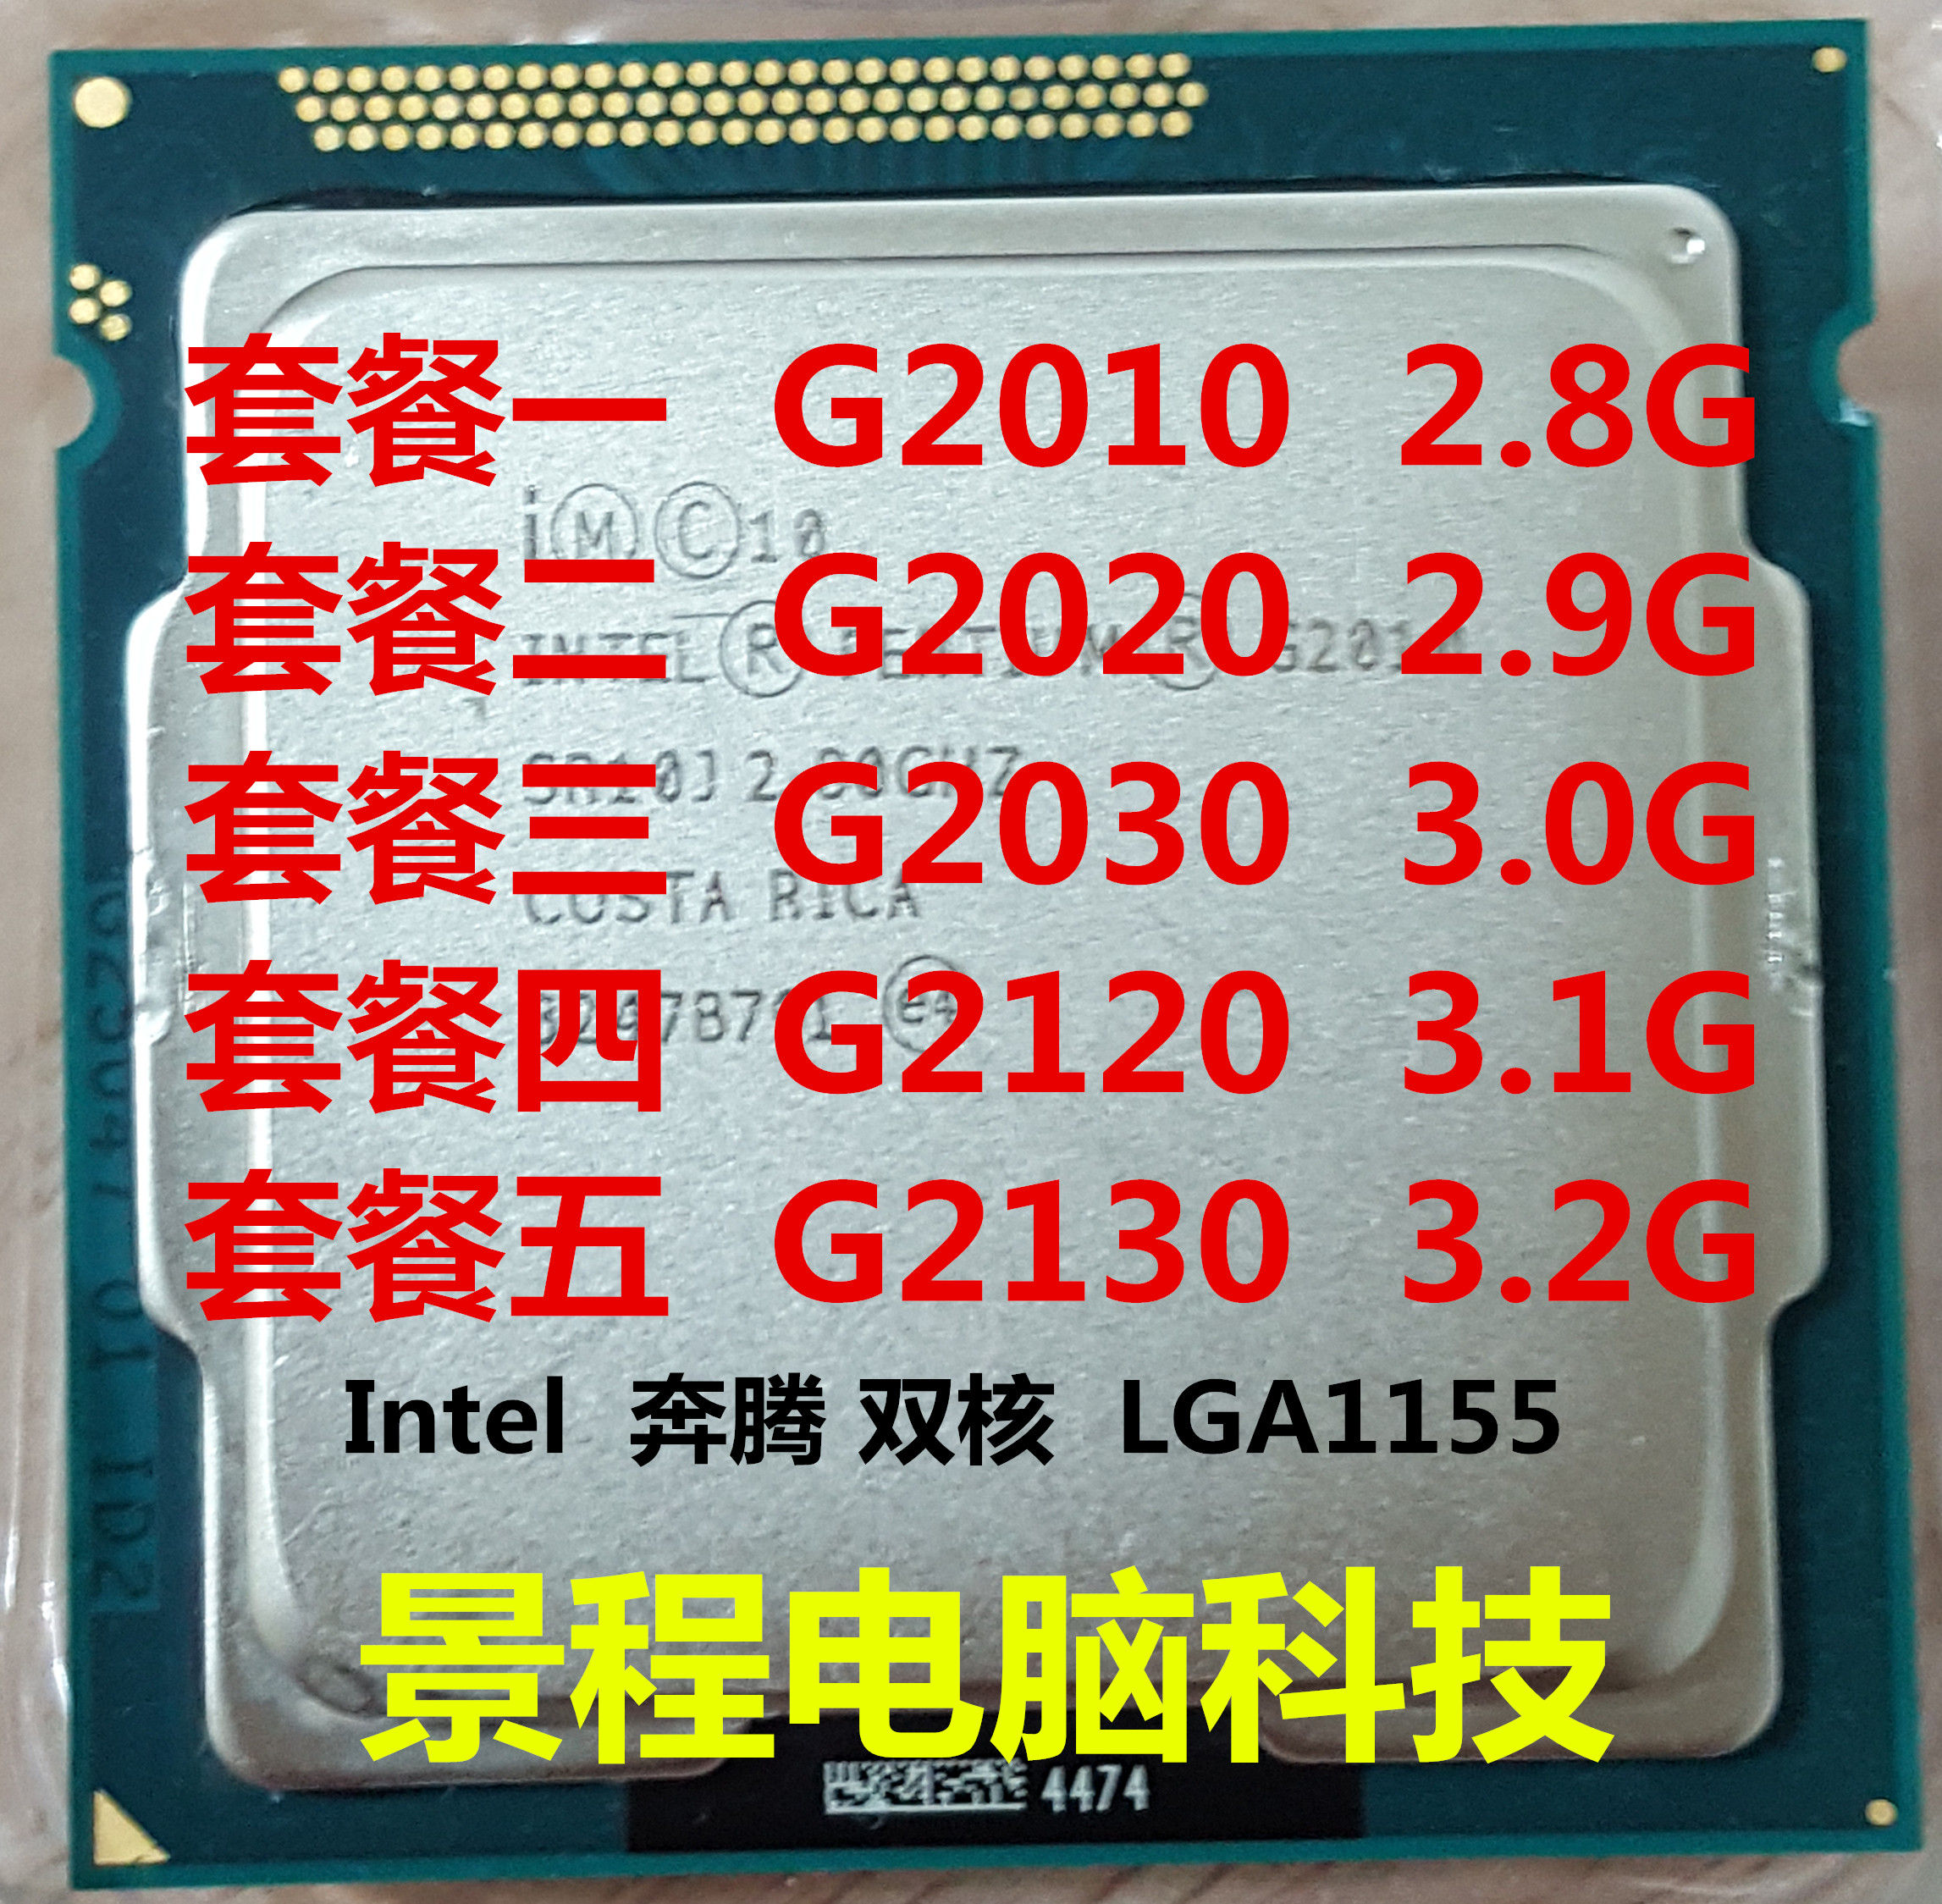 Intel/英特尔 G2010 2020 2030 2120 2130 台式机CPU 1155 22纳米